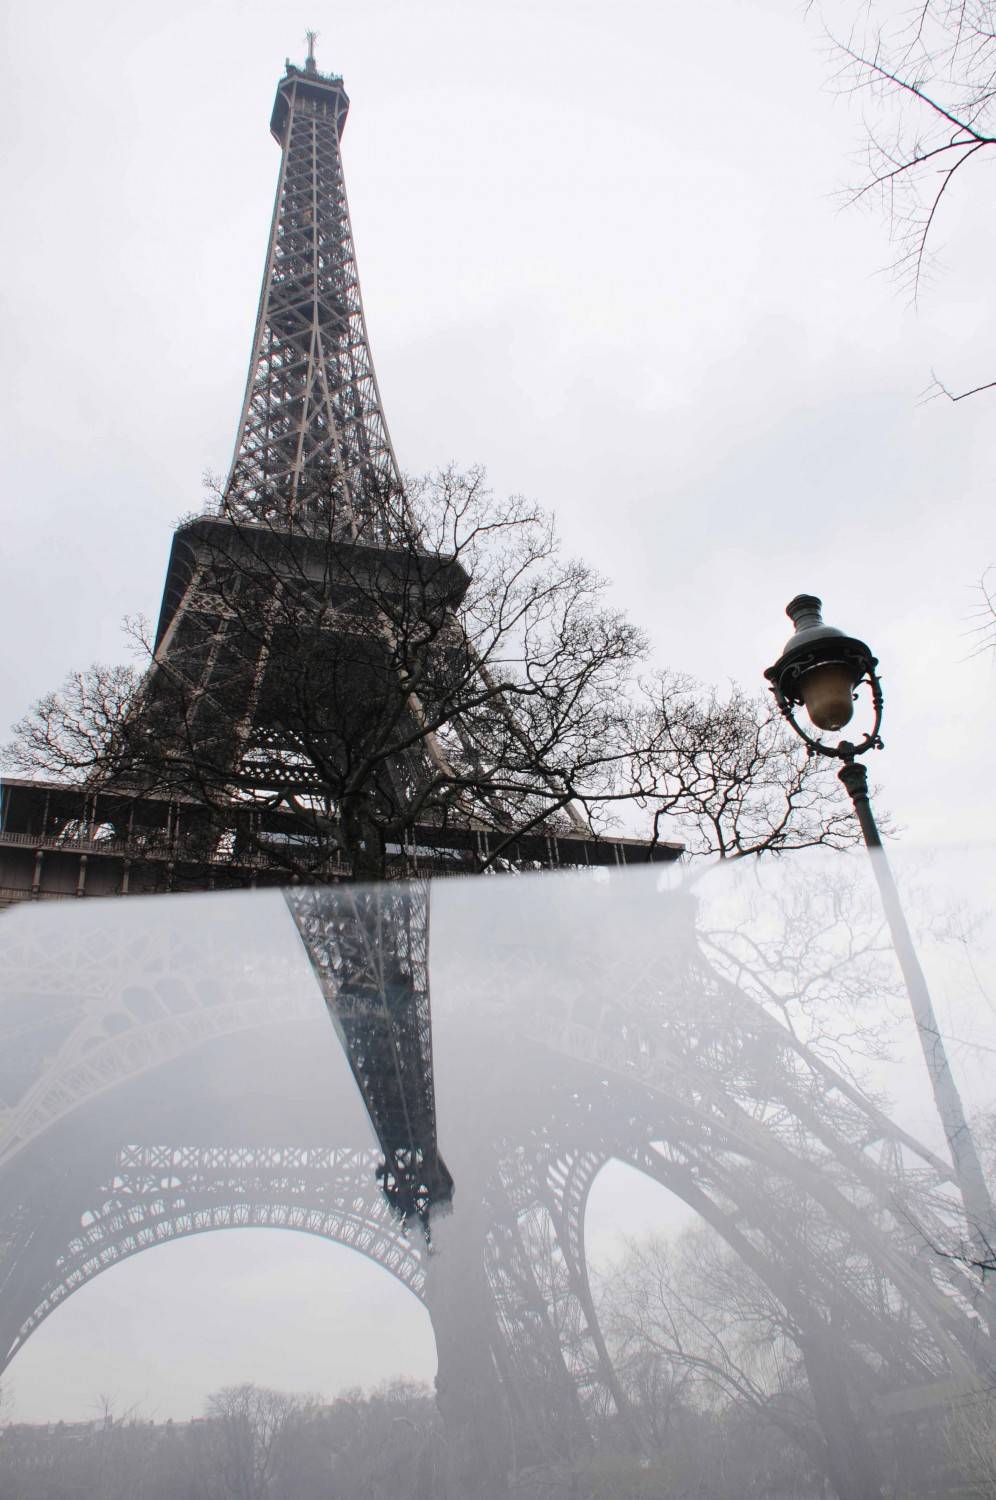 A Parigi crolla il turismo a causa della paura di nuovi attentati